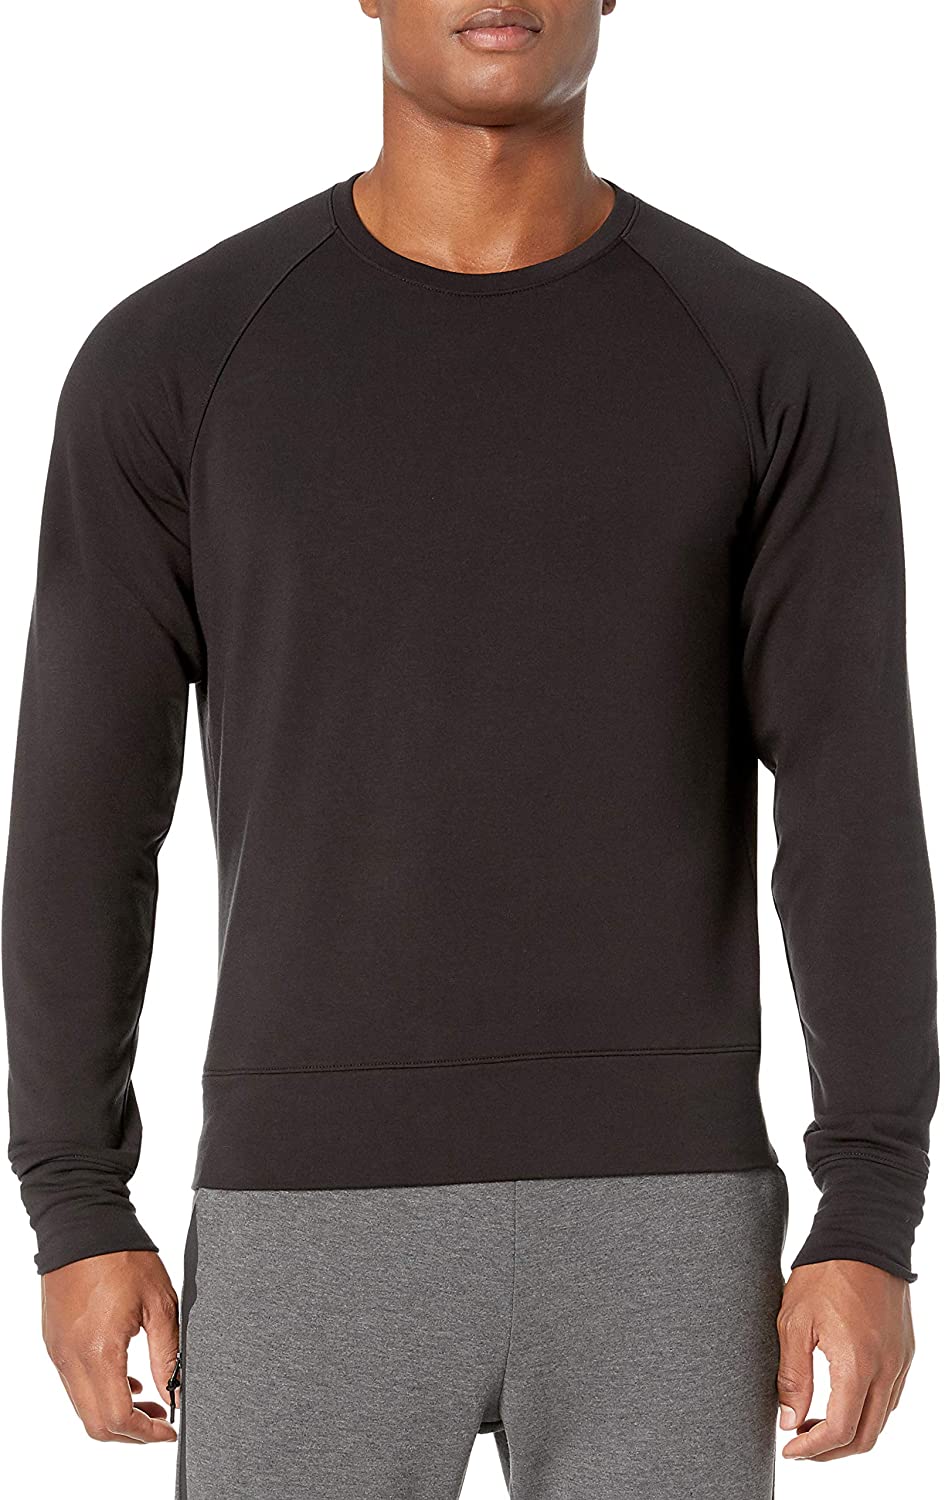 Yoga Luxe Fleece Crew-neck pullover-sweaters Uomo Marchio Peak Velocity 